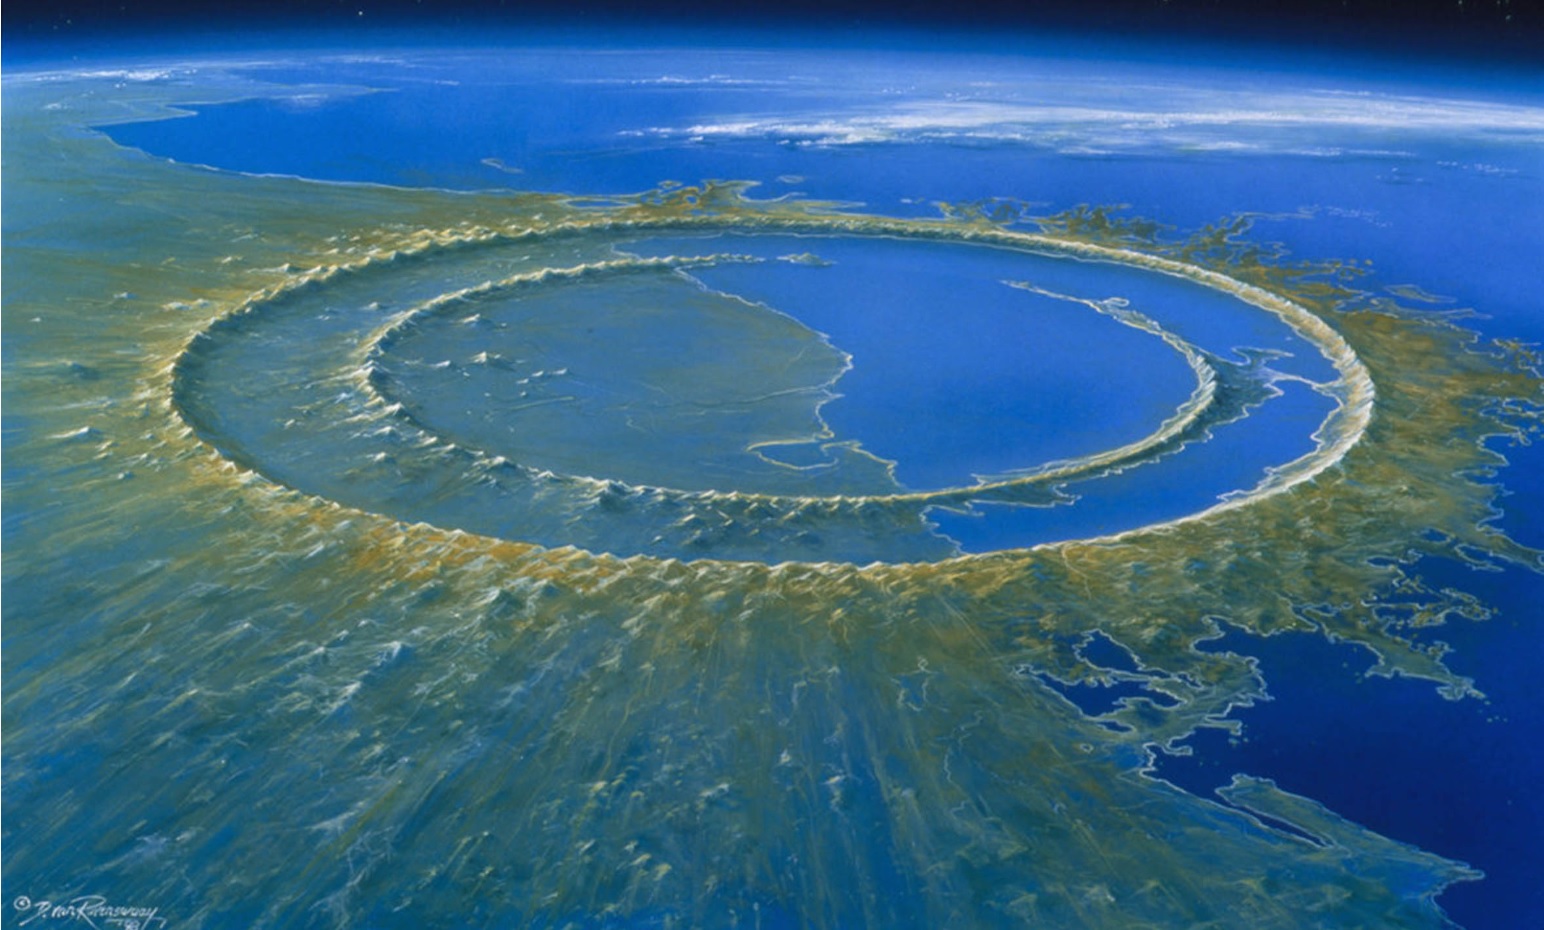 A{un se puede apreciar los rastros del impacto del asteroide que cayó en hace 66 millones de años 